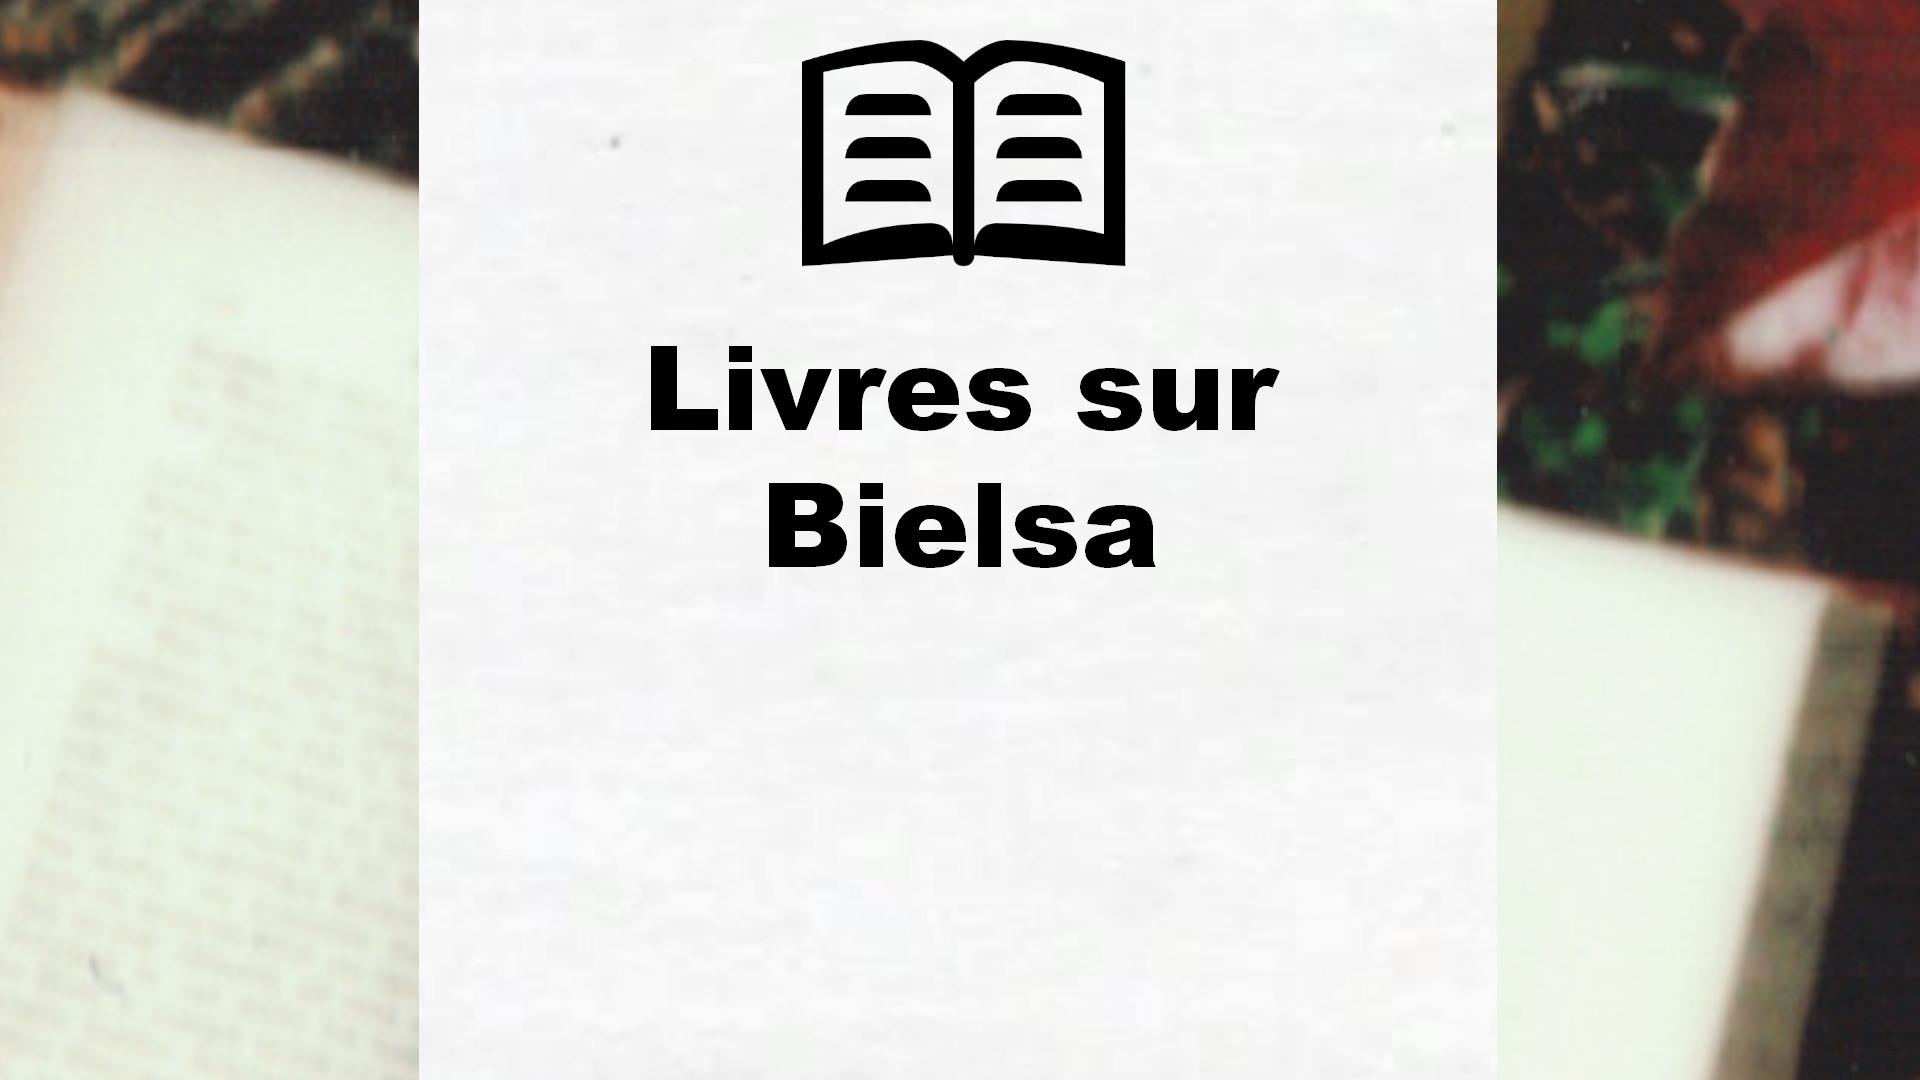 Livres sur Bielsa